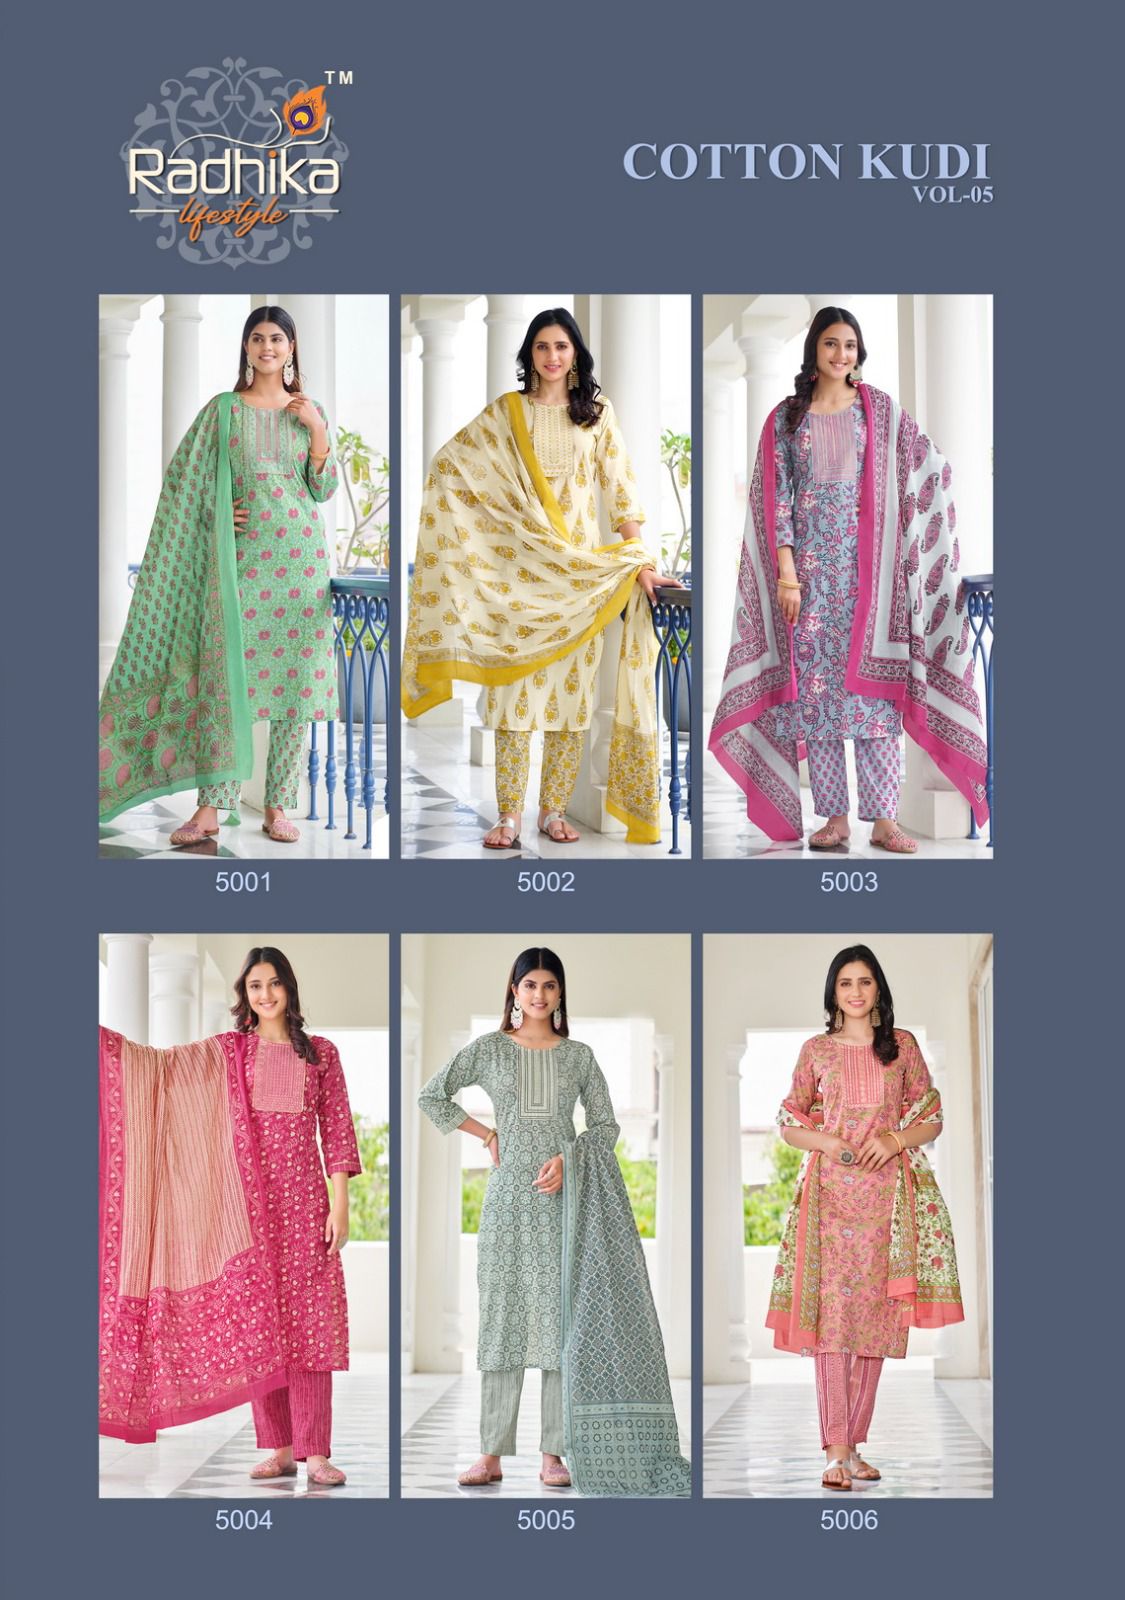 Radhika Cotton Kudi Vol 5 collection 1